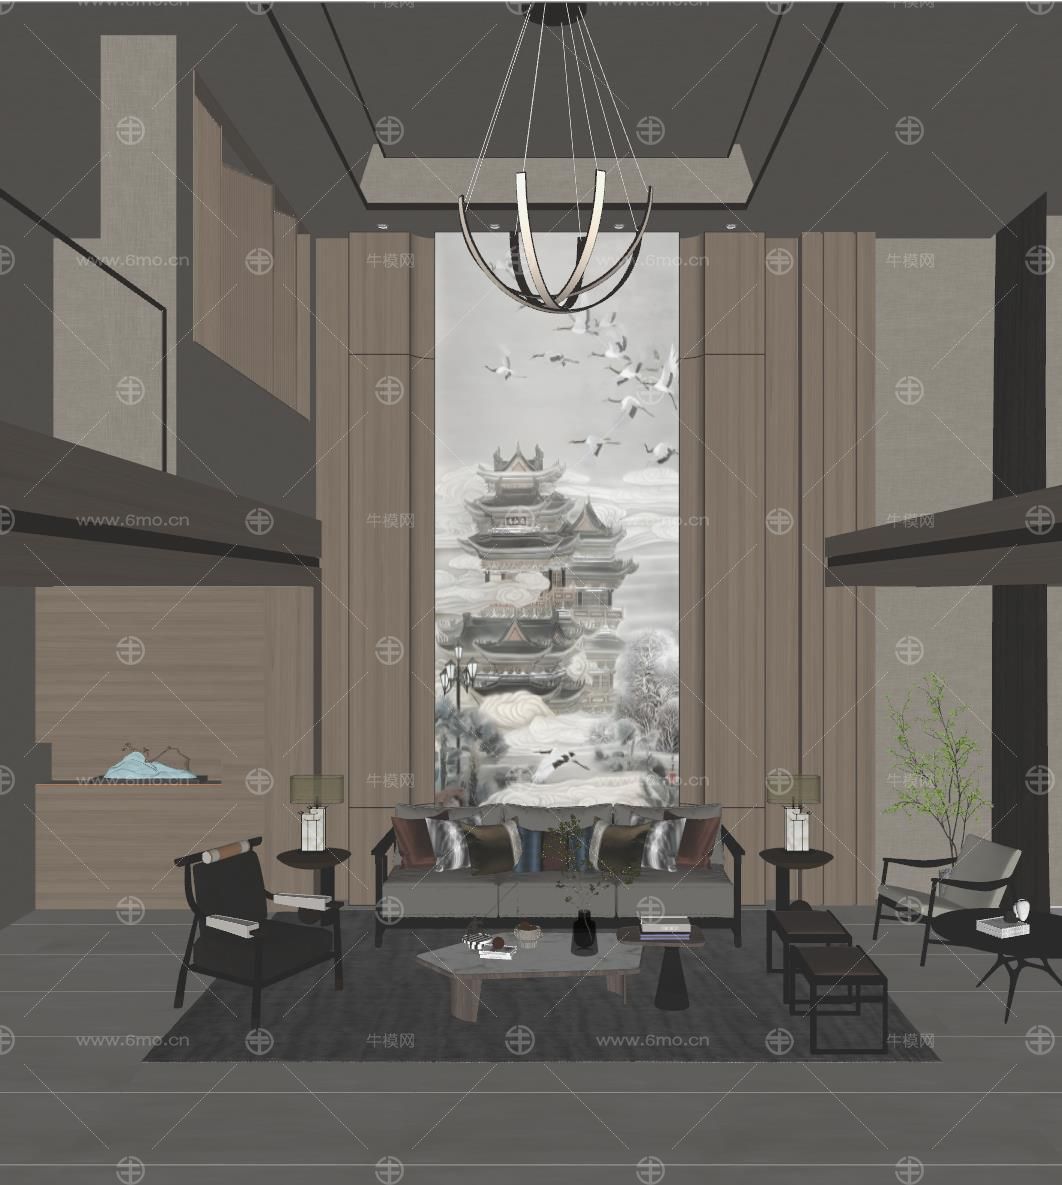 新中式原木风LOFT复制别墅客厅挑空客厅沙发背景墙